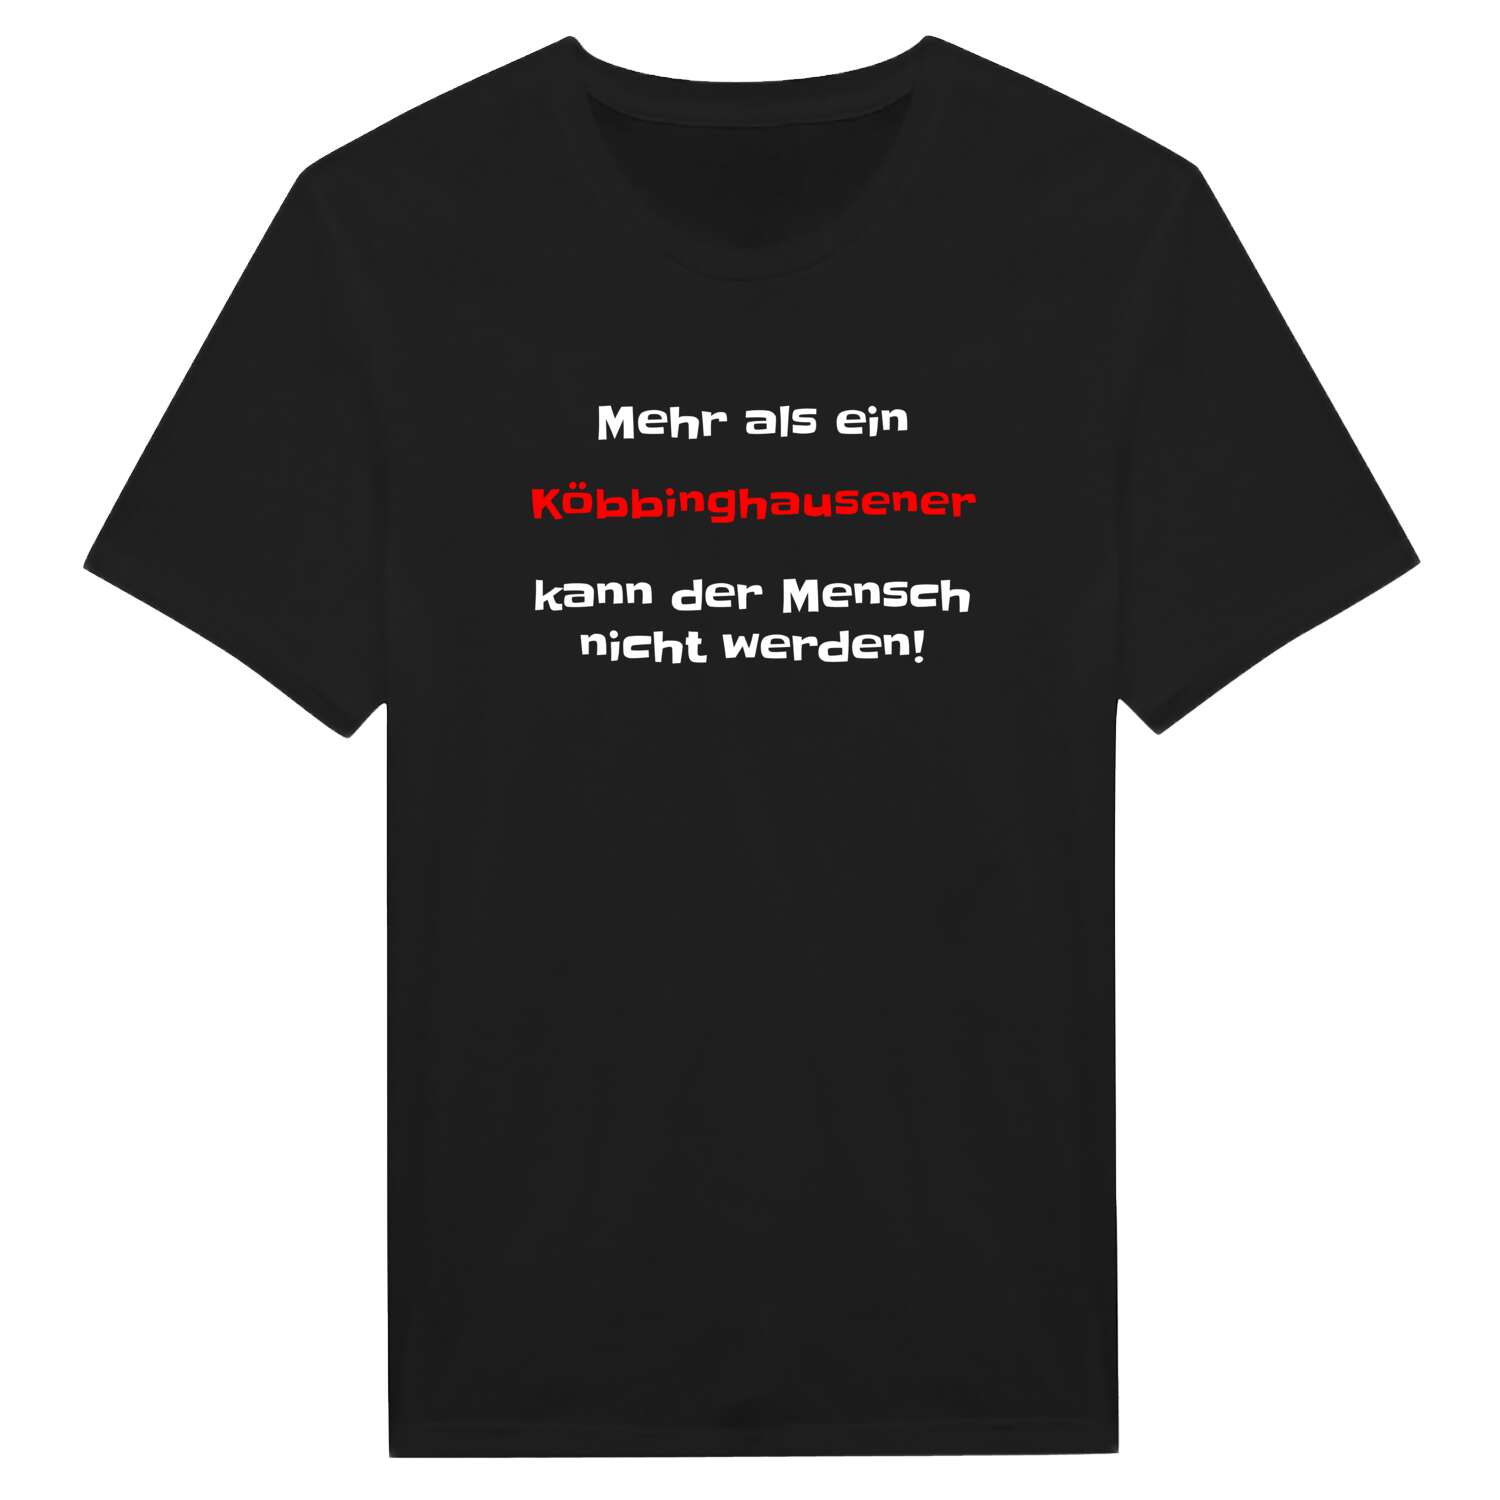 Köbbinghausen T-Shirt »Mehr als ein«